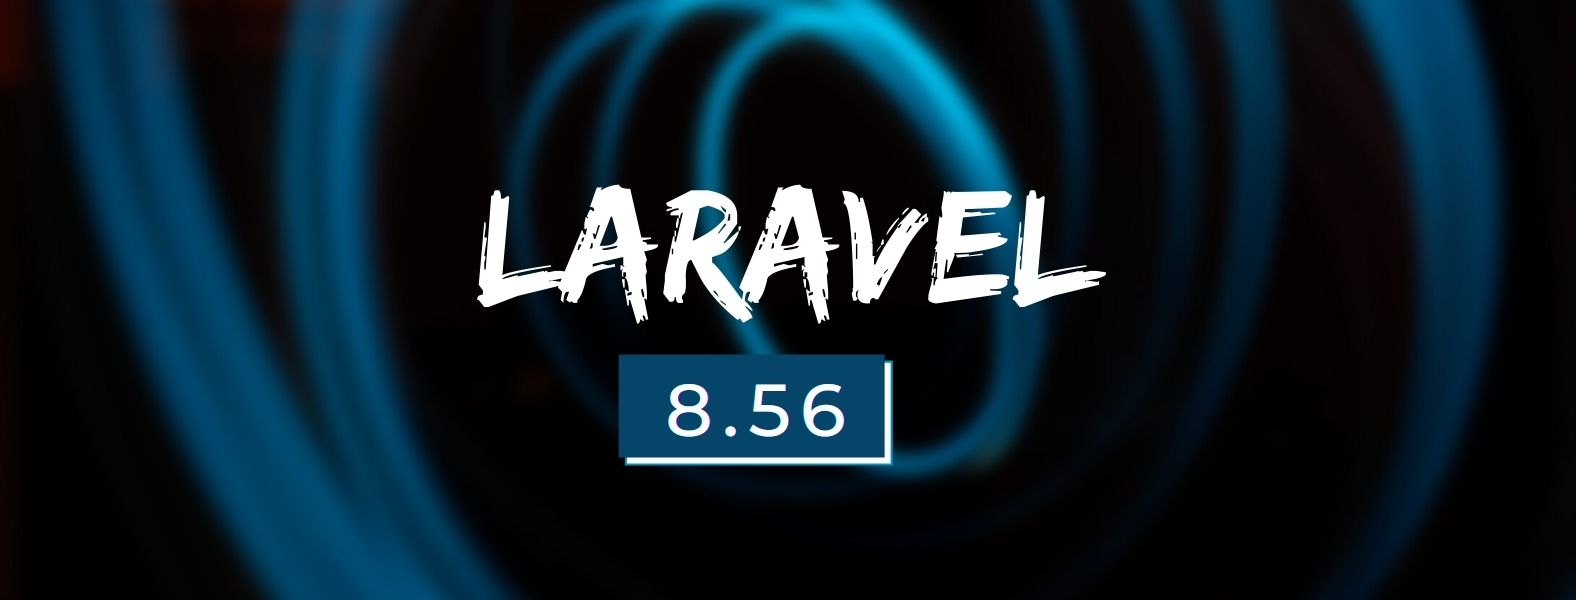 What's new in Laravel 8.56 - Laravel 8.56 Released